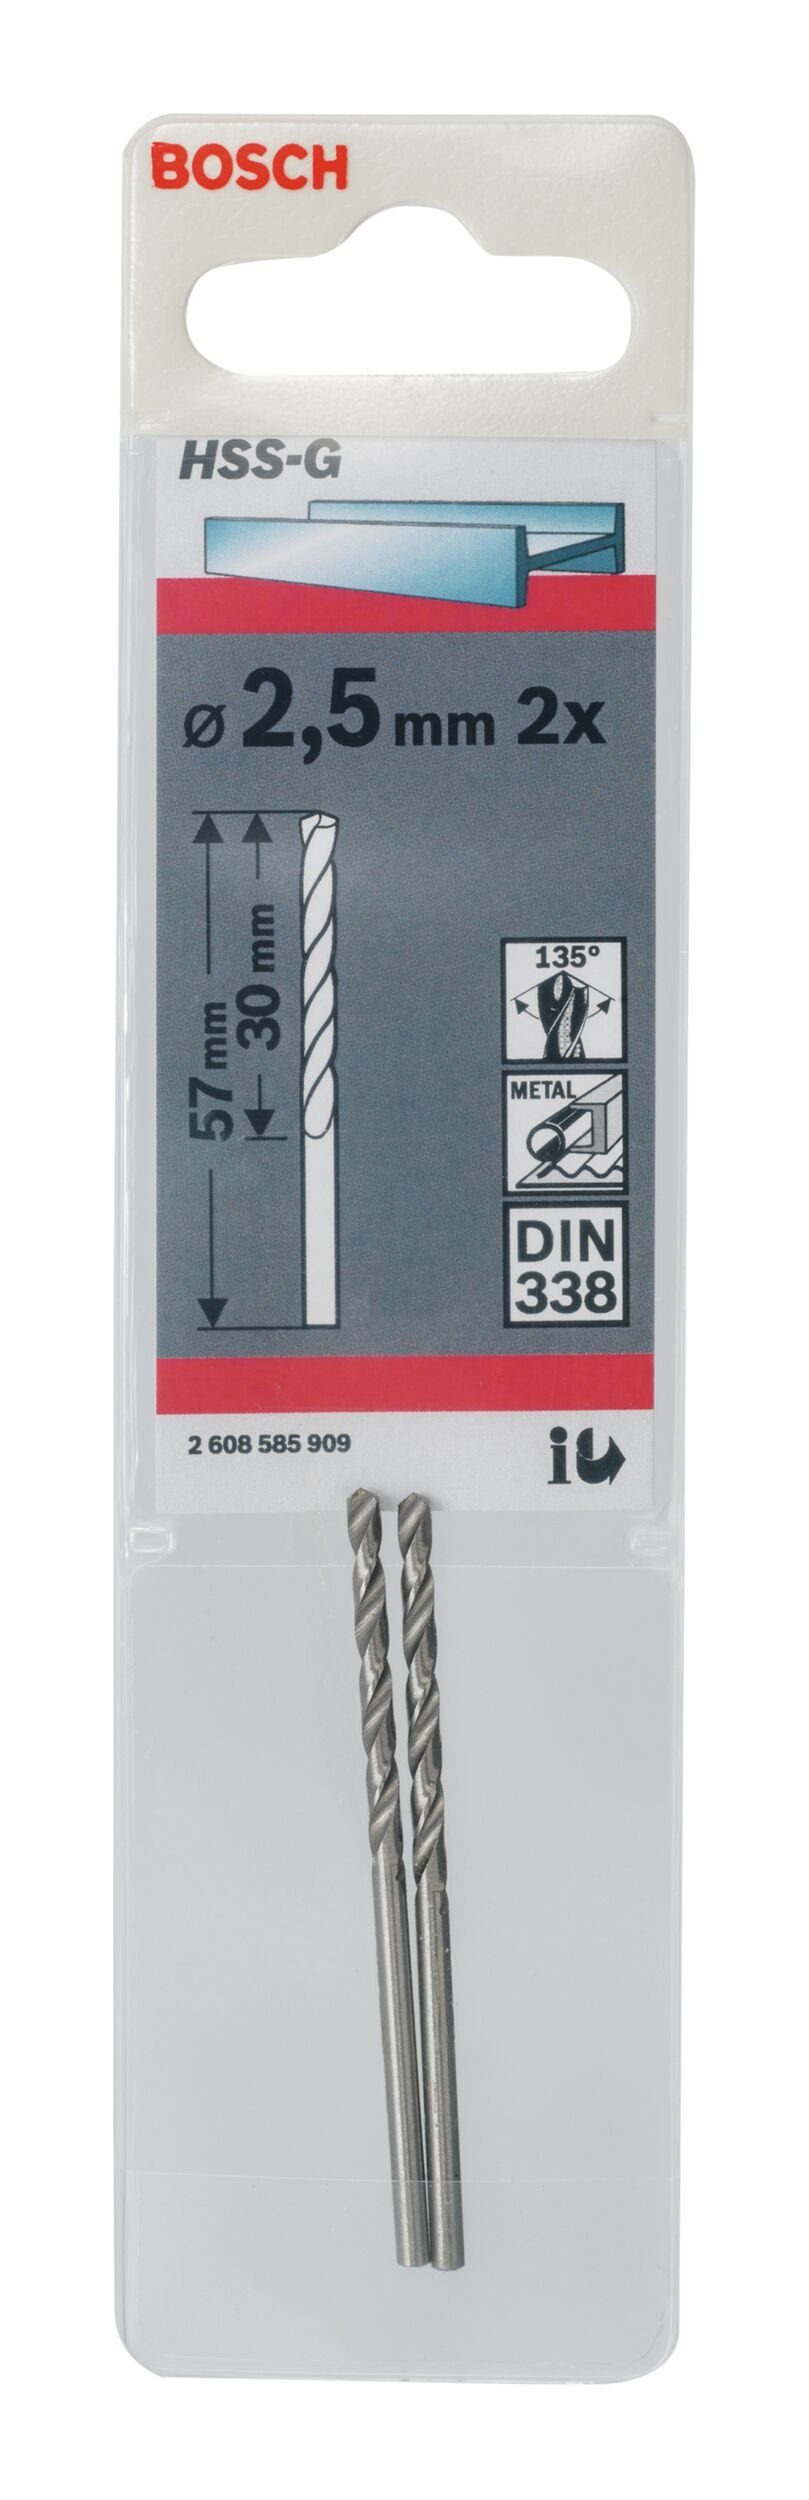 338) x HSS-G (2 2,5 BOSCH - - Stück), 30 57 (DIN 2er-Pack mm Metallbohrer, x